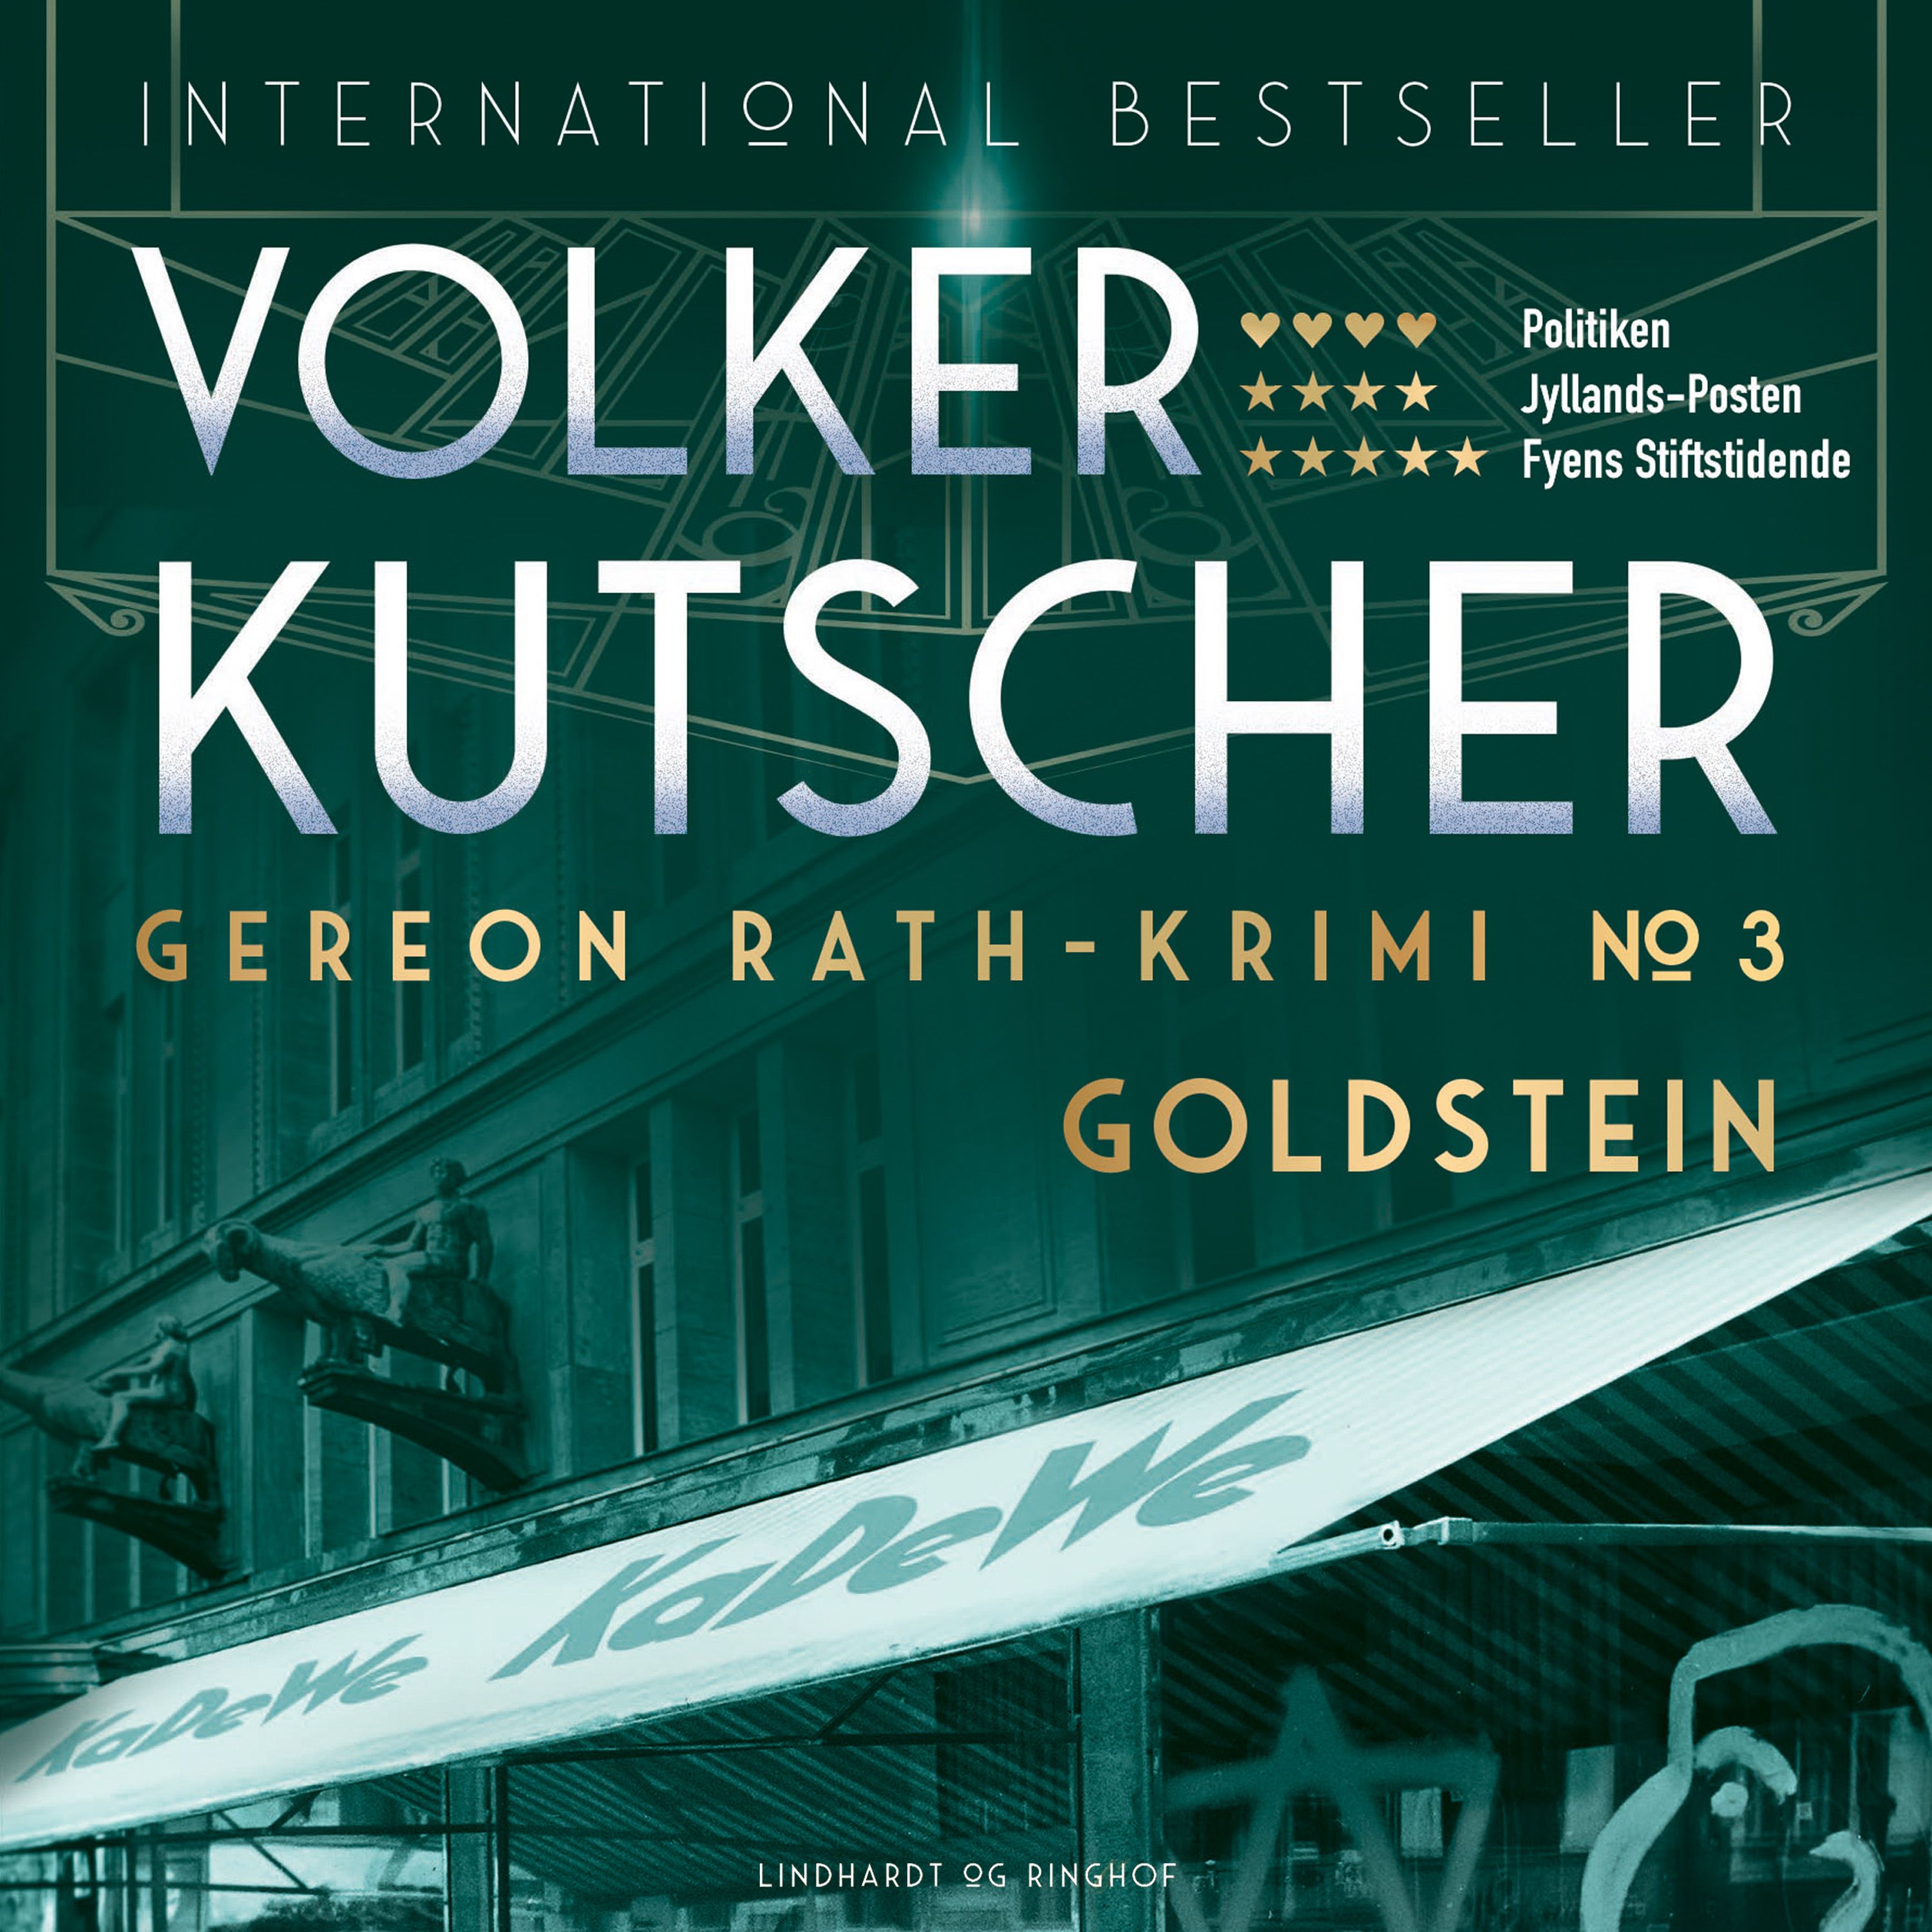 Goldstein, ljudbok av Volker Kutscher